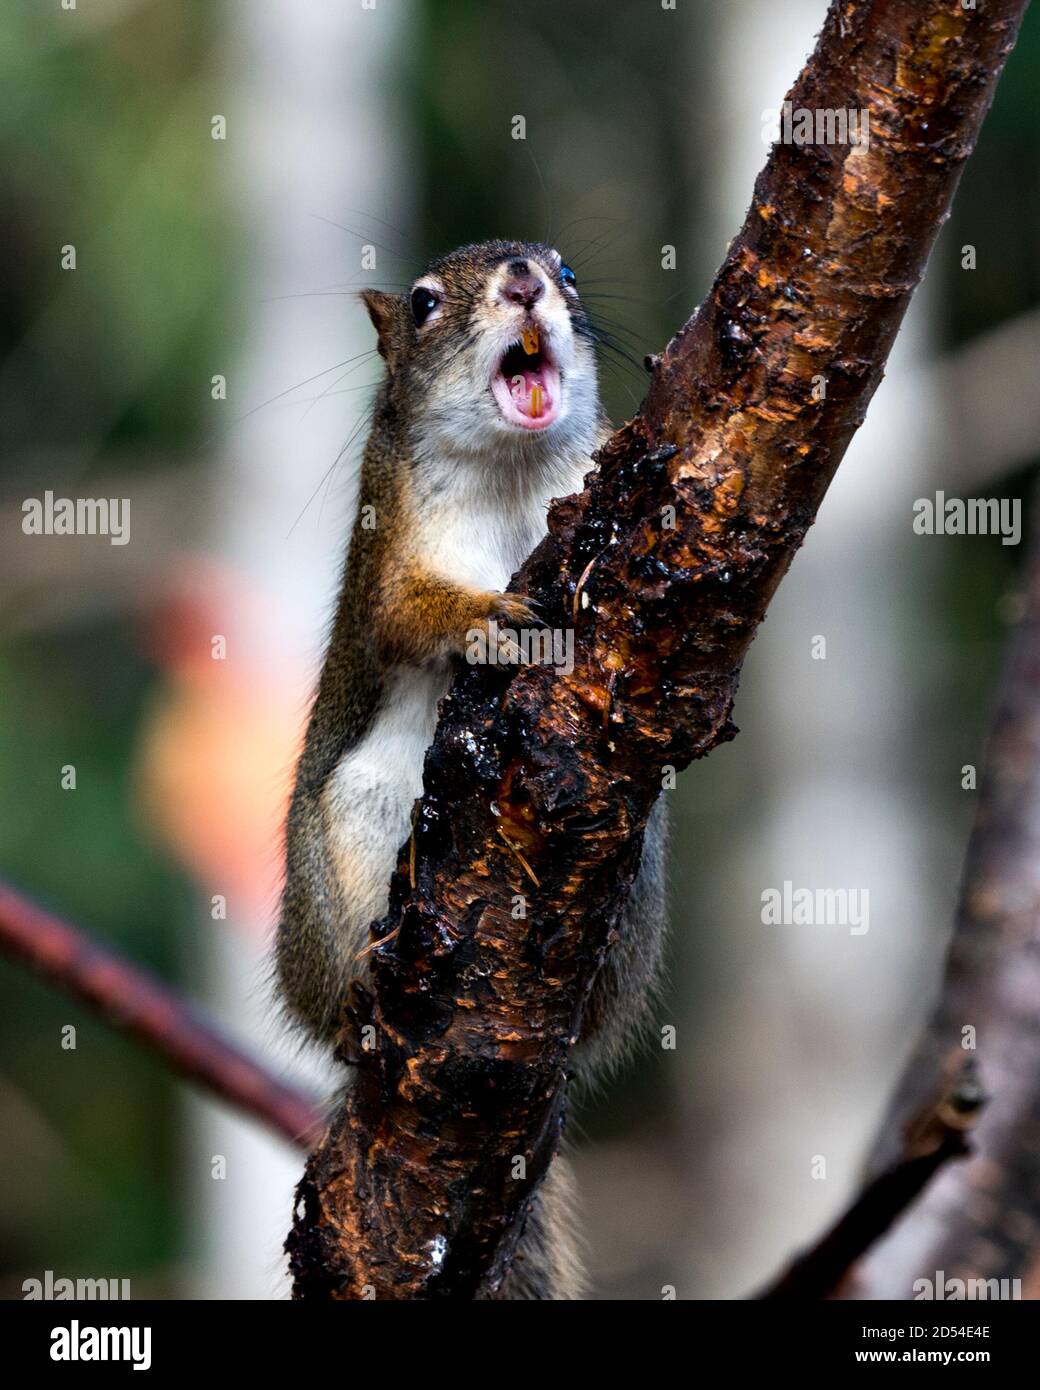 Eichhörnchen Nahaufnahme Profilansicht auf einem Zweig im Wald mit offenem Mund, zeigt Zähne, Nase, Augen, Pfoten mit einem verschwommenen Hintergrund in seinem Lebensraum. Stockfoto